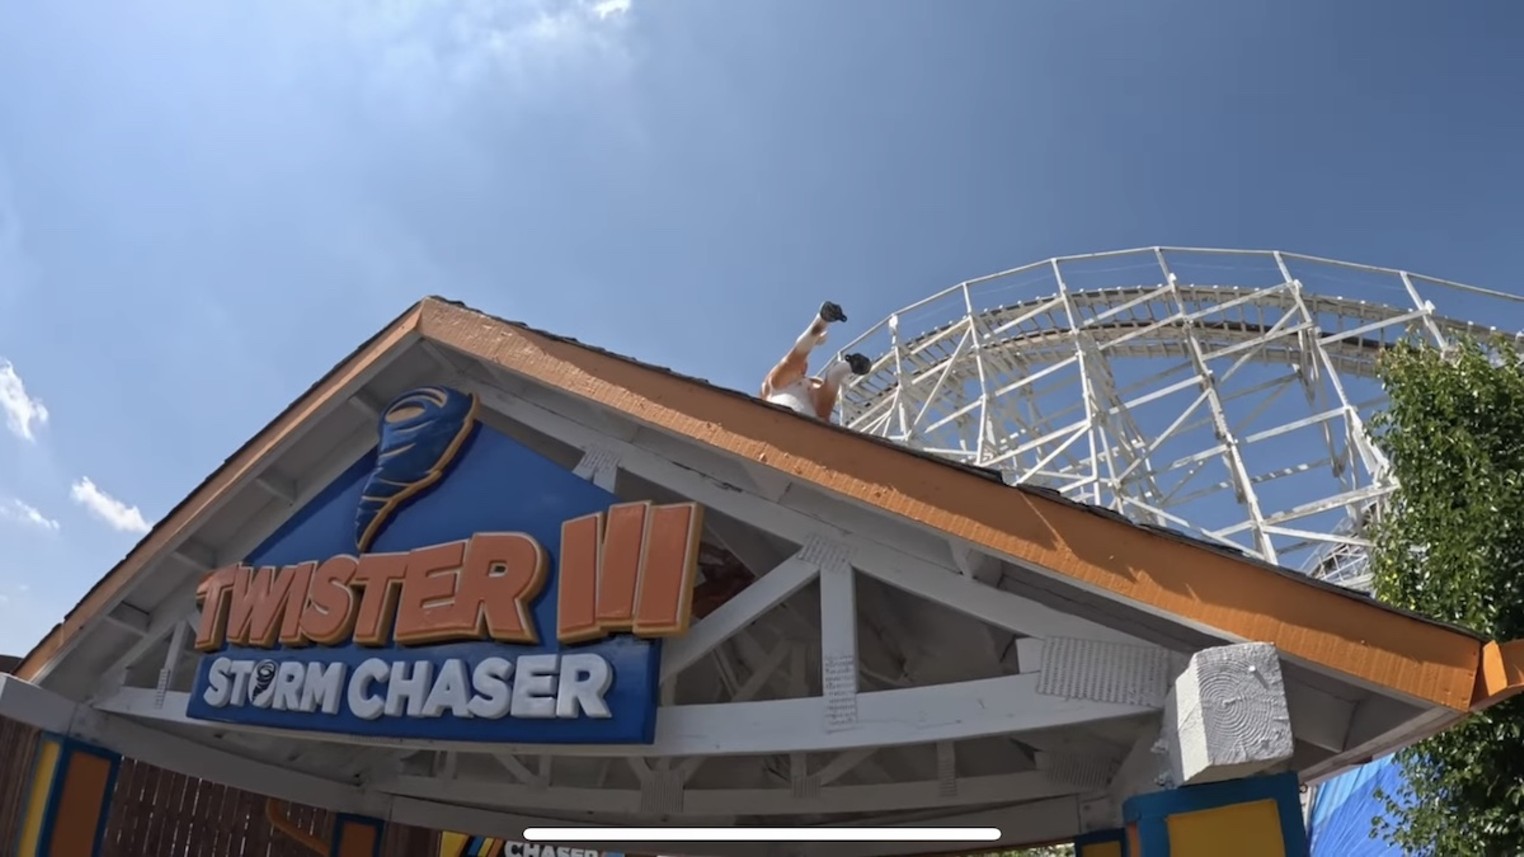 Denver Thrill Rides & Amusement Parks